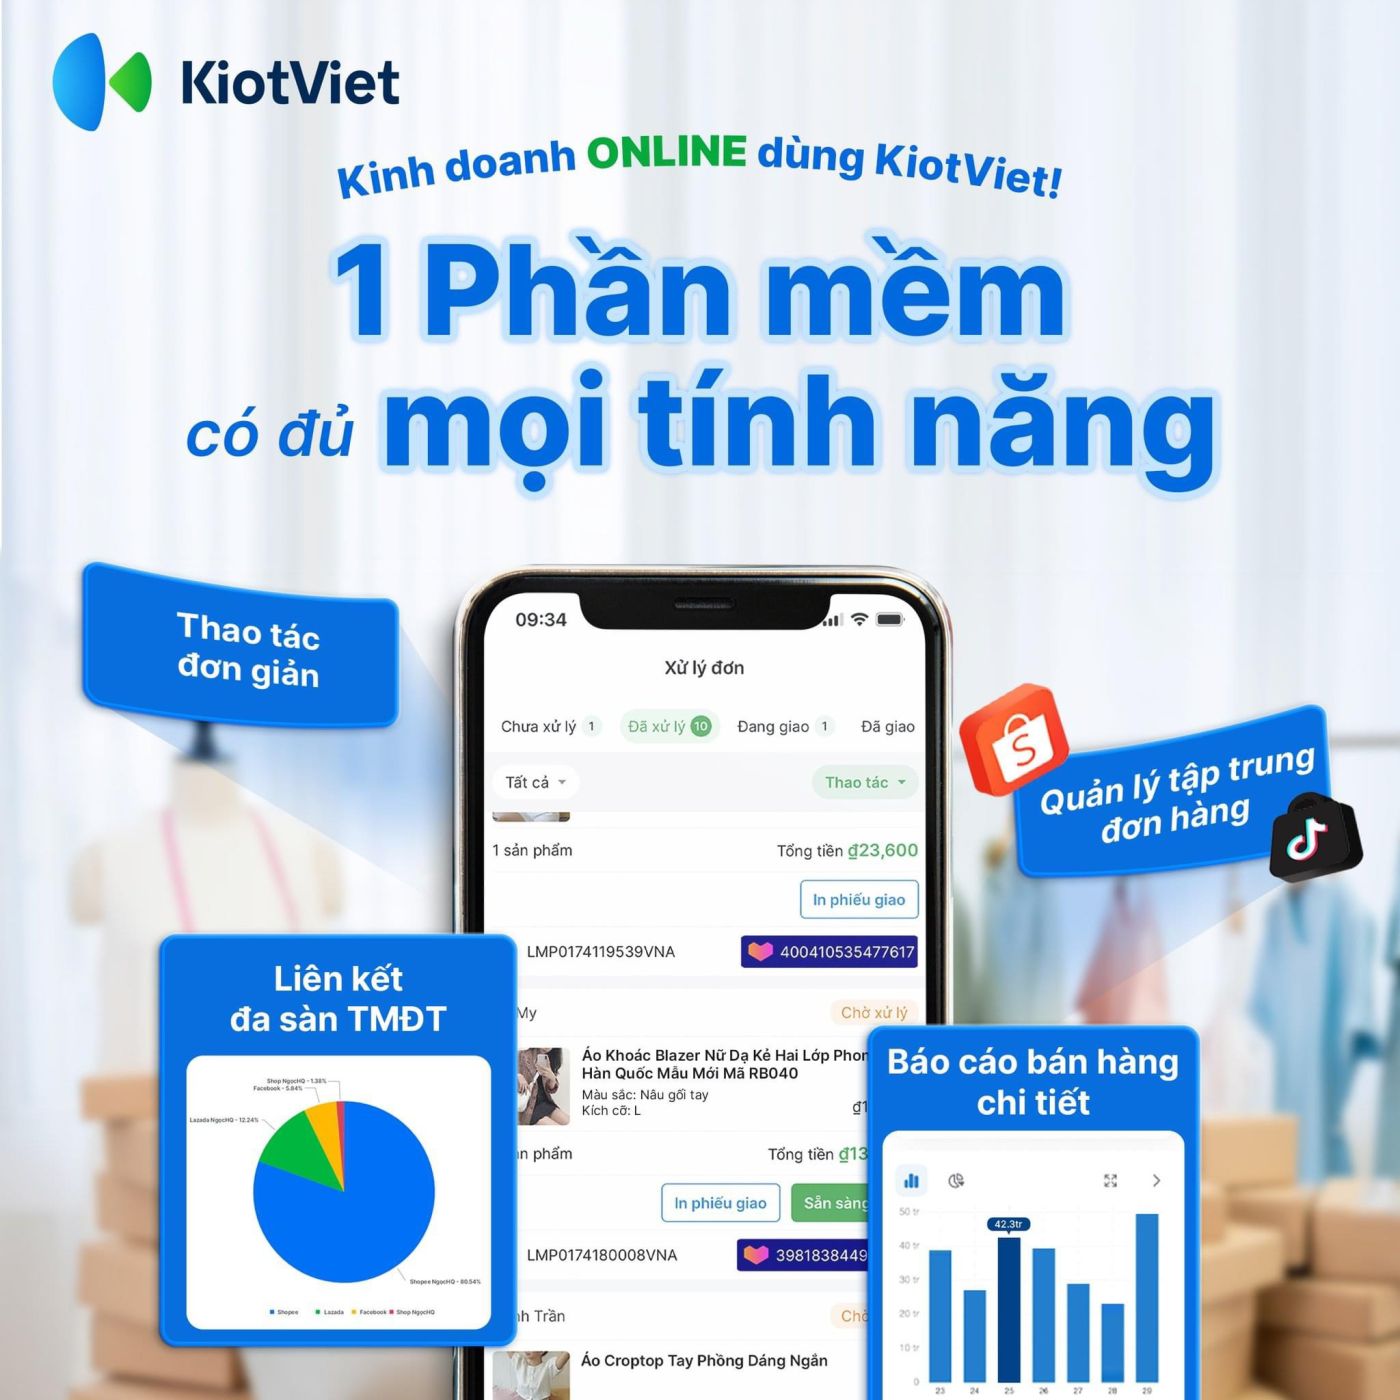 Phần mềm quản lý bán hàng Kiotviet gói 1 năm hỗ trợ